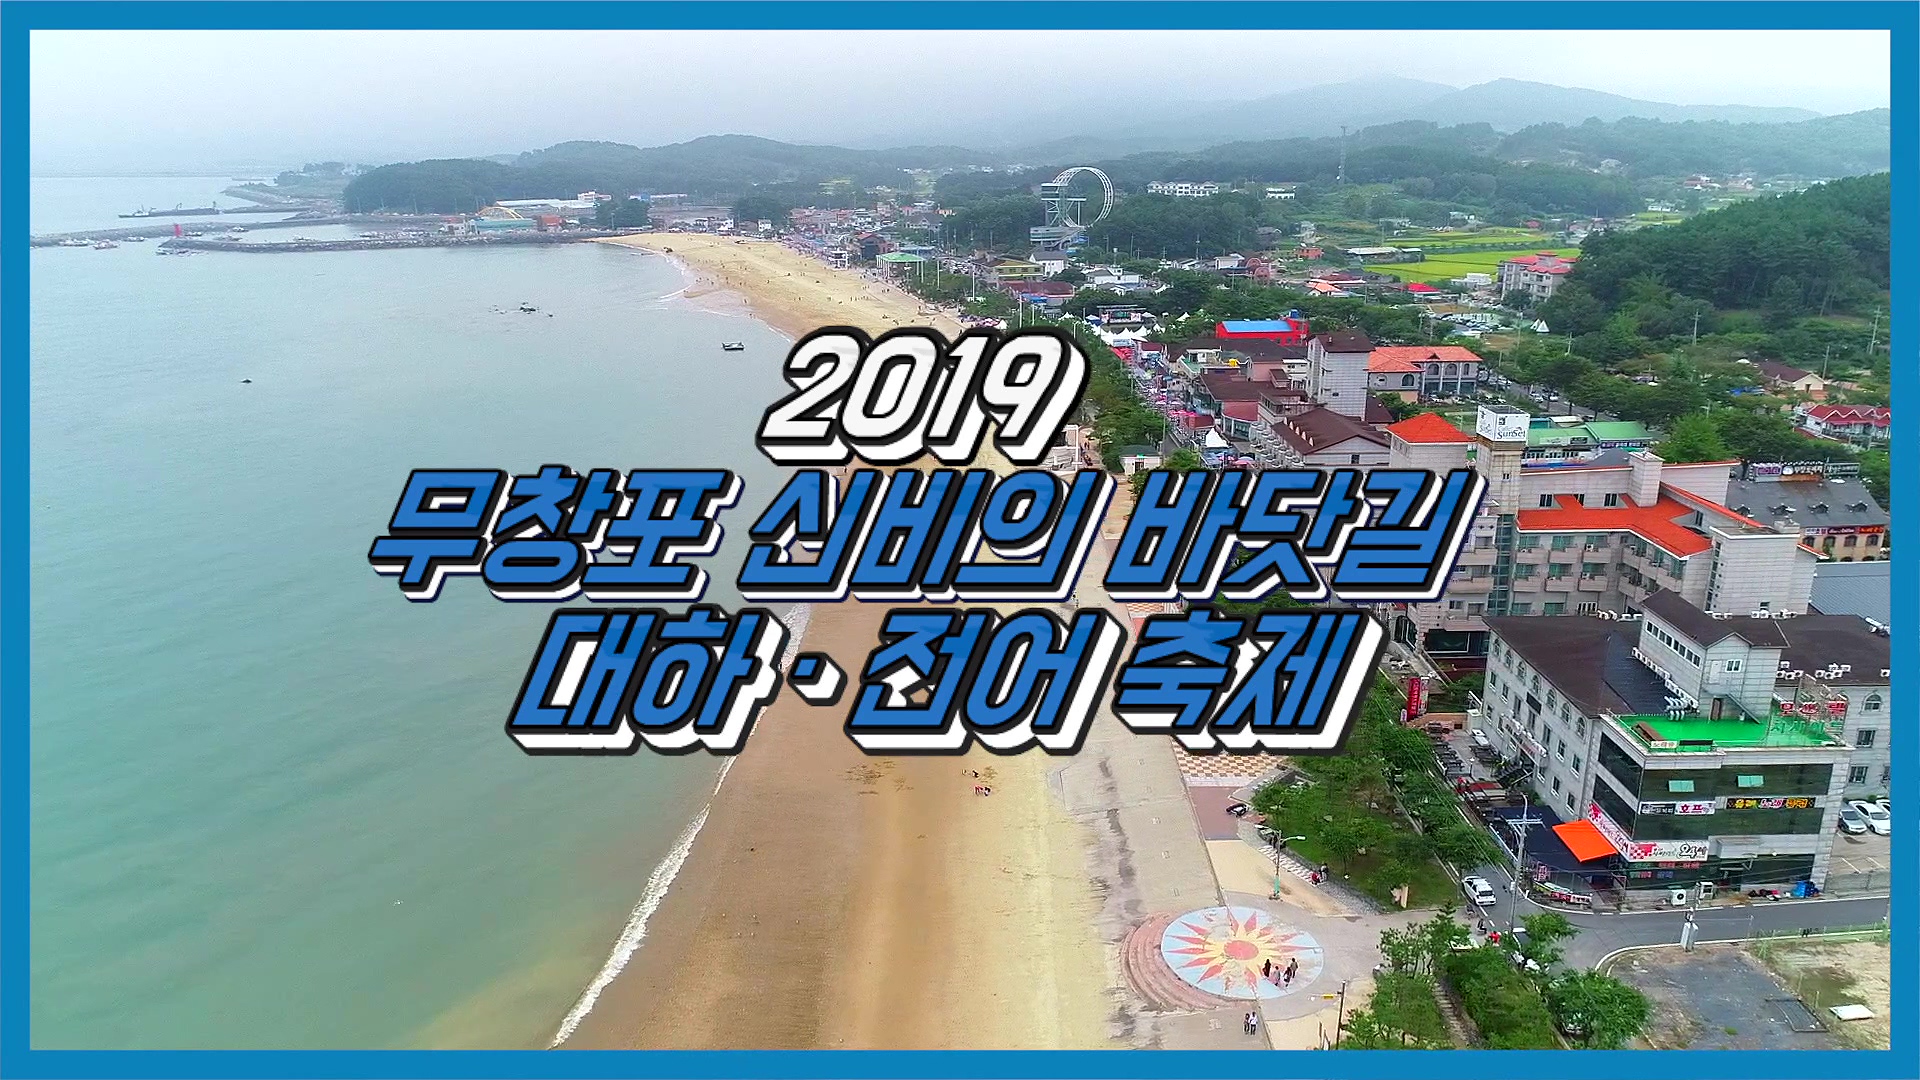 2019 무창포 신비의 바닷길 대하 전어 축제